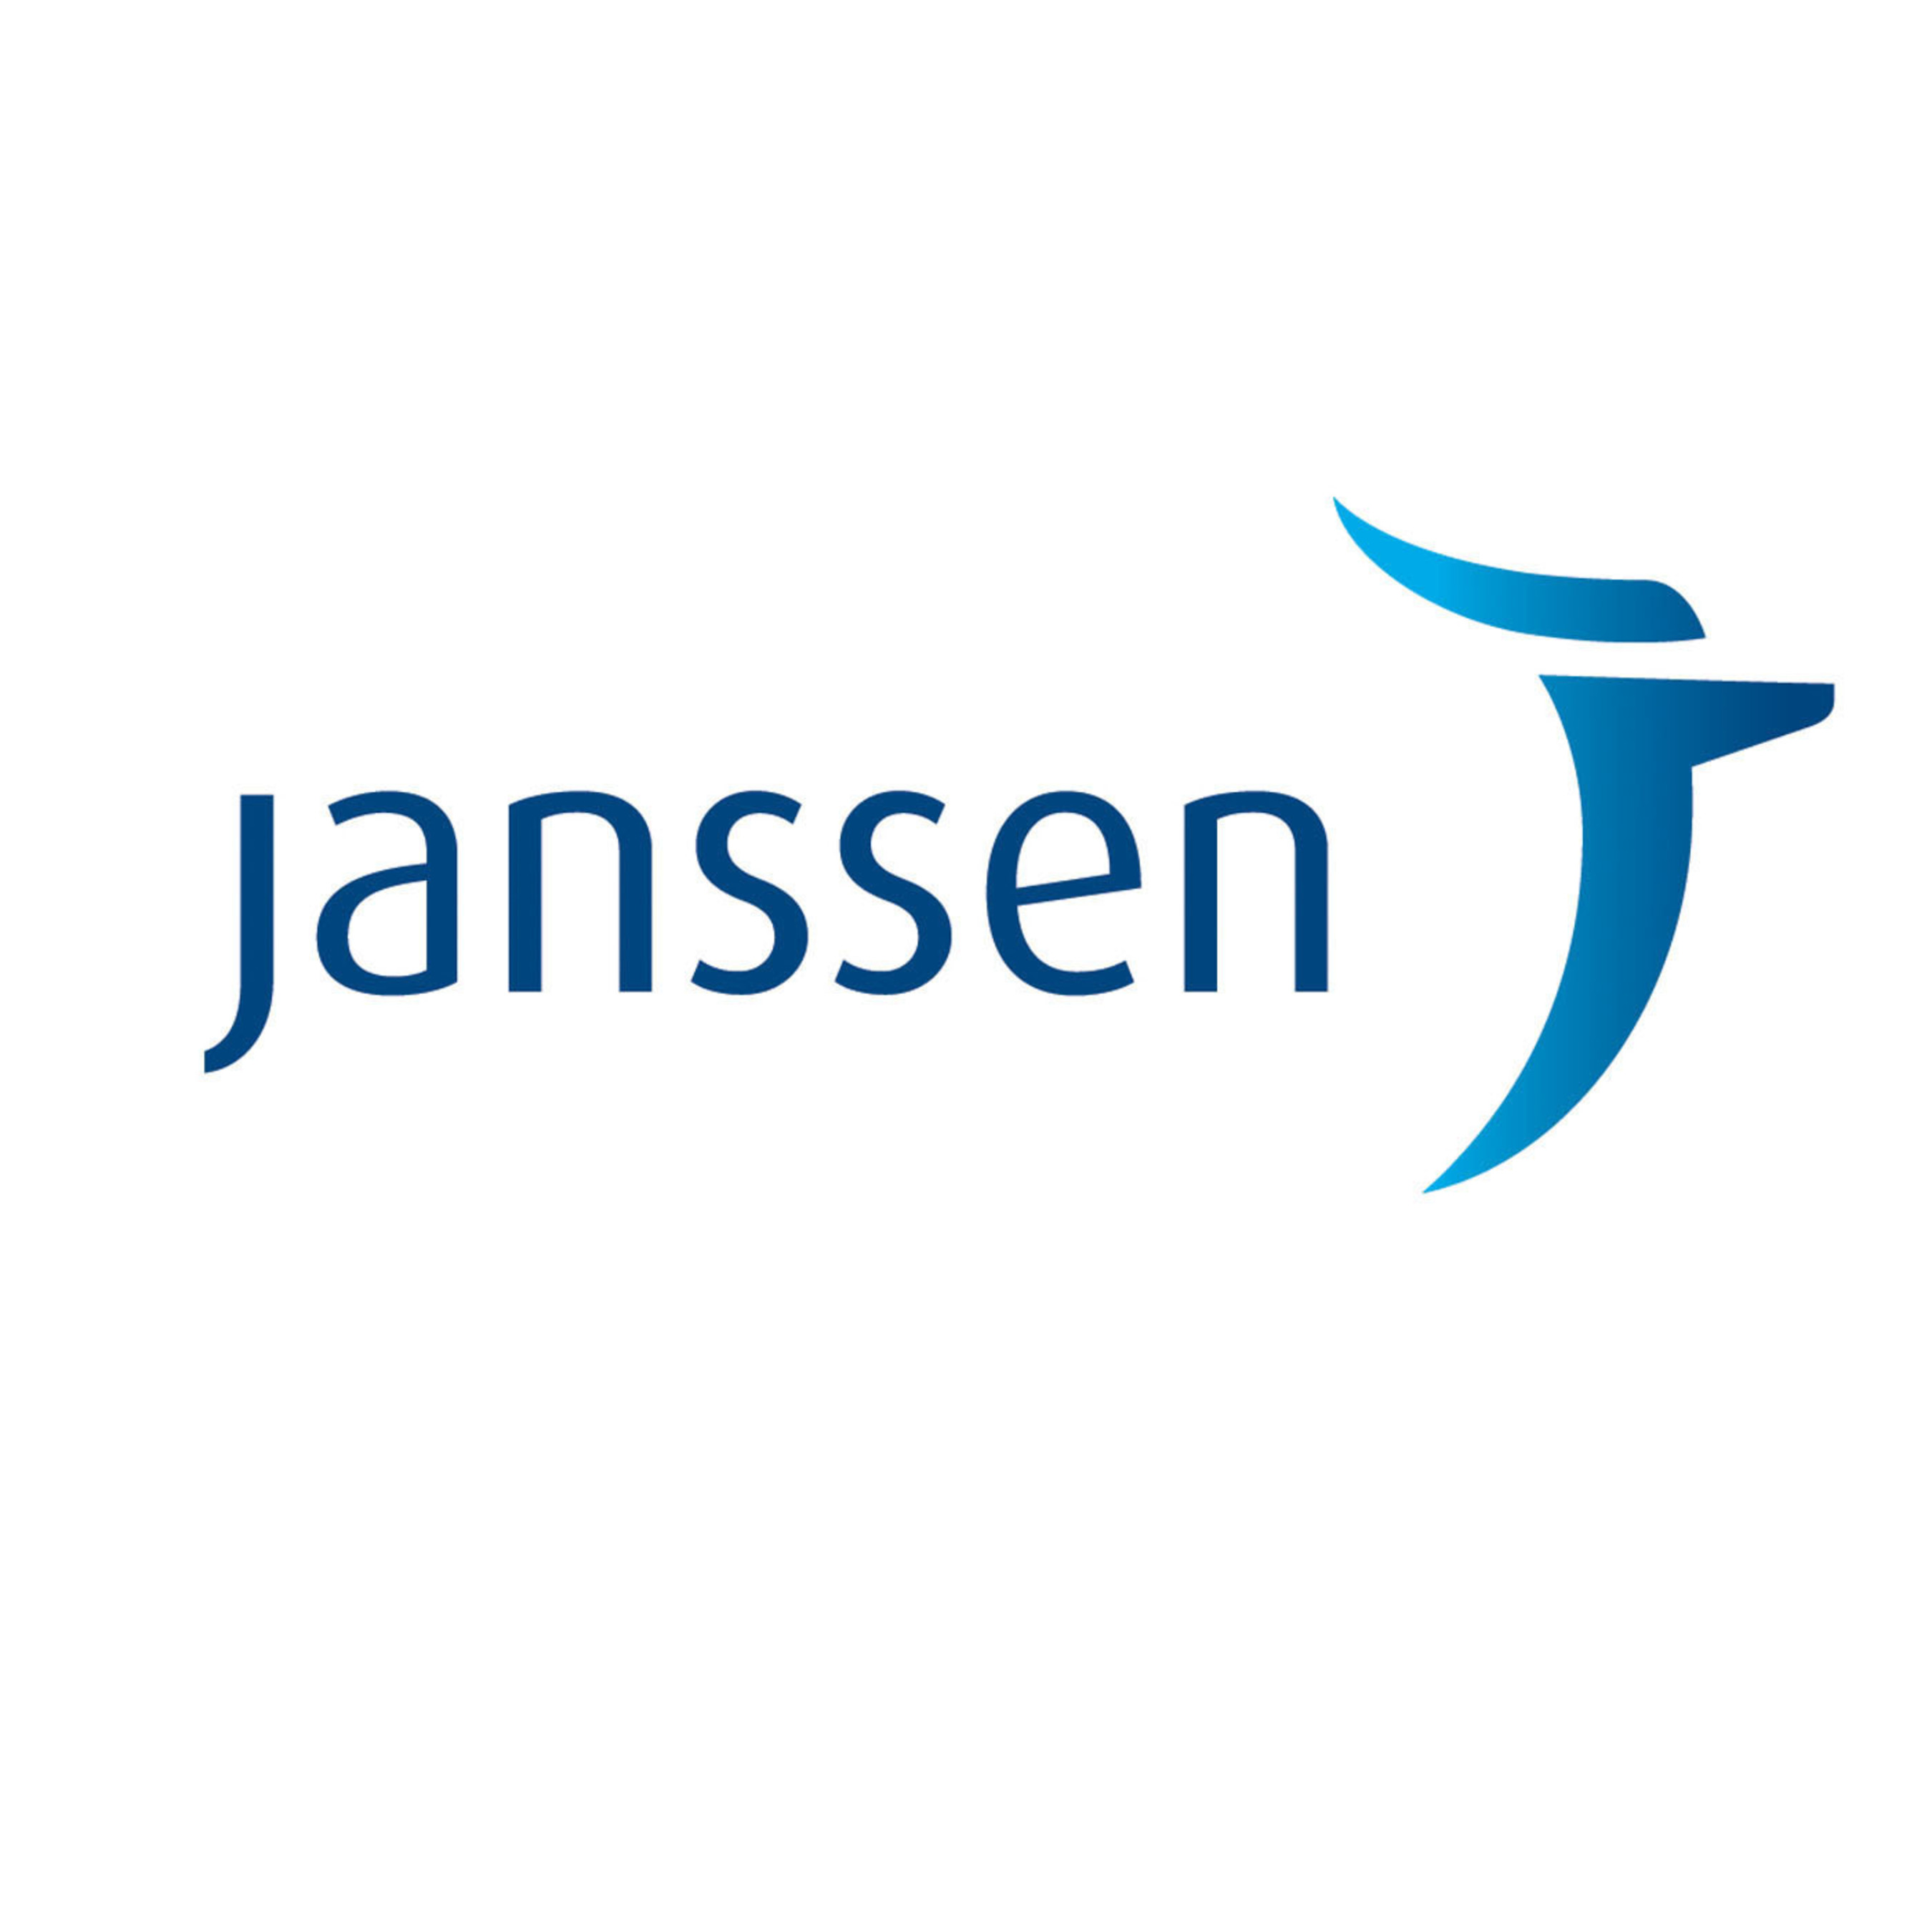 Janssen Logo. (PRNewsFoto/Janssen Pharmaceutical Companies) (PRNewsFoto/JANSSEN PHARMACEUTICAL COMPANIES)